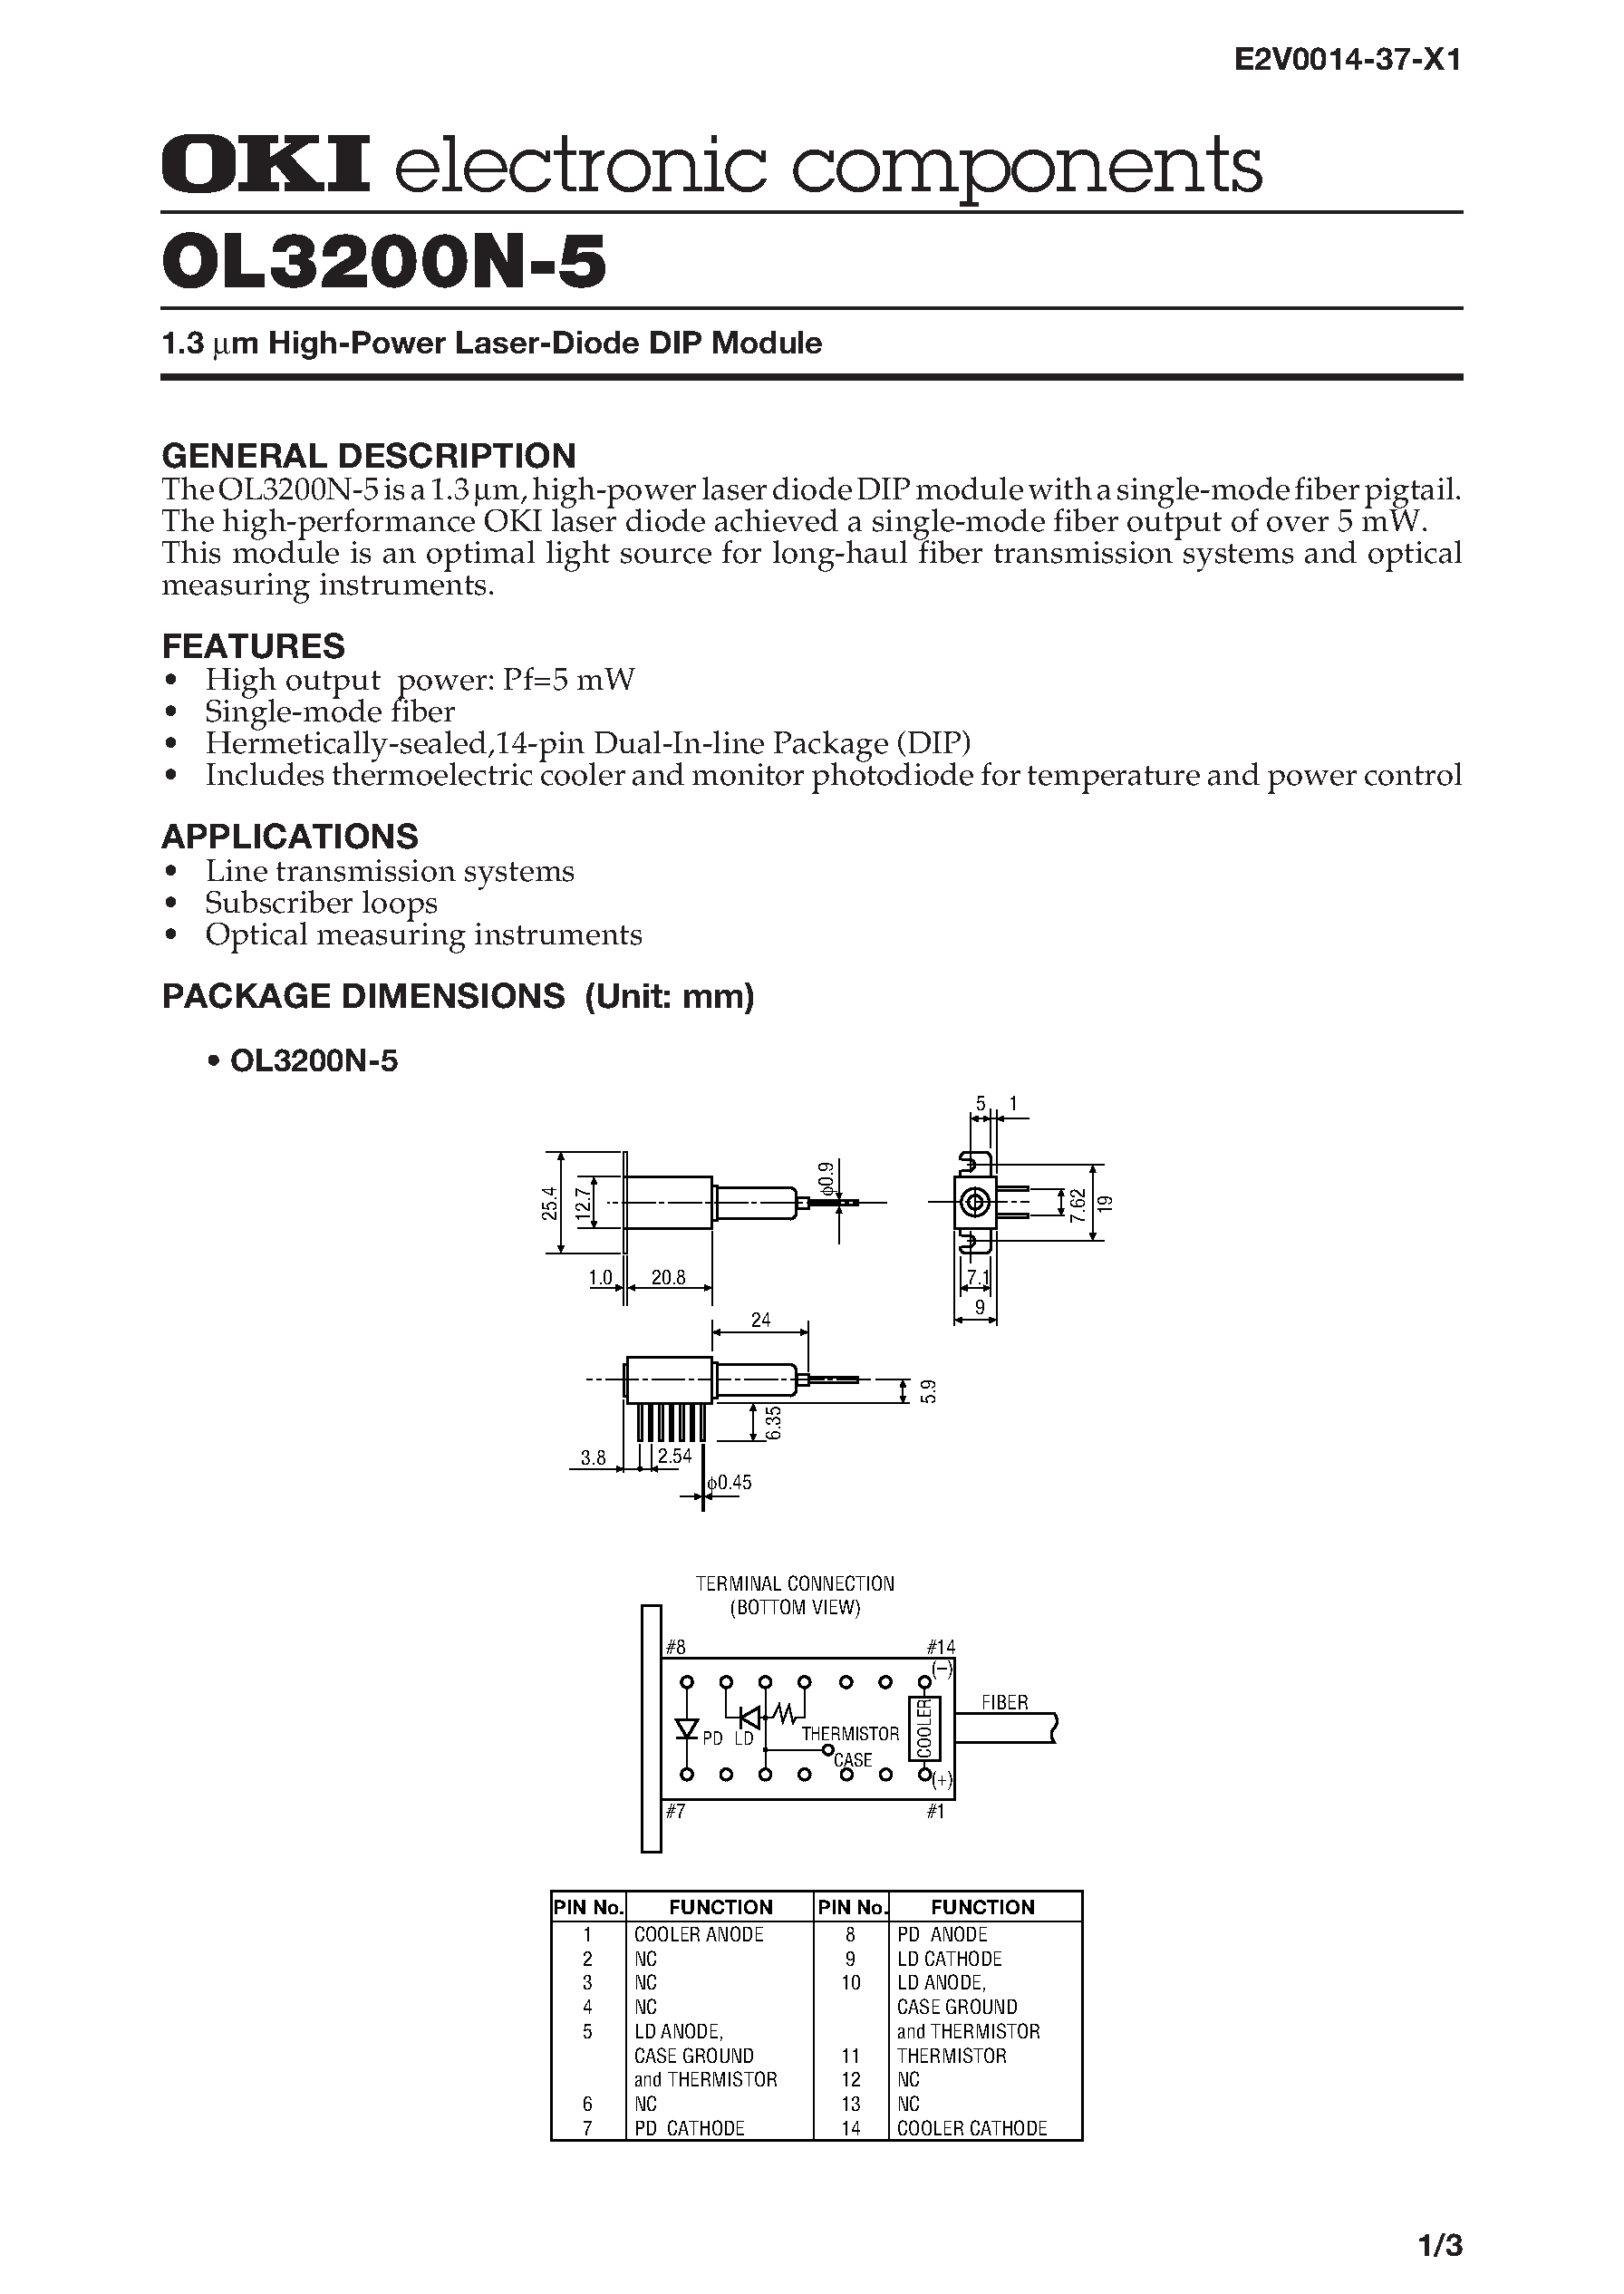 Datasheet OL3200N-5 - 1.3 m High-Power Laser-Diode DIP Module page 1